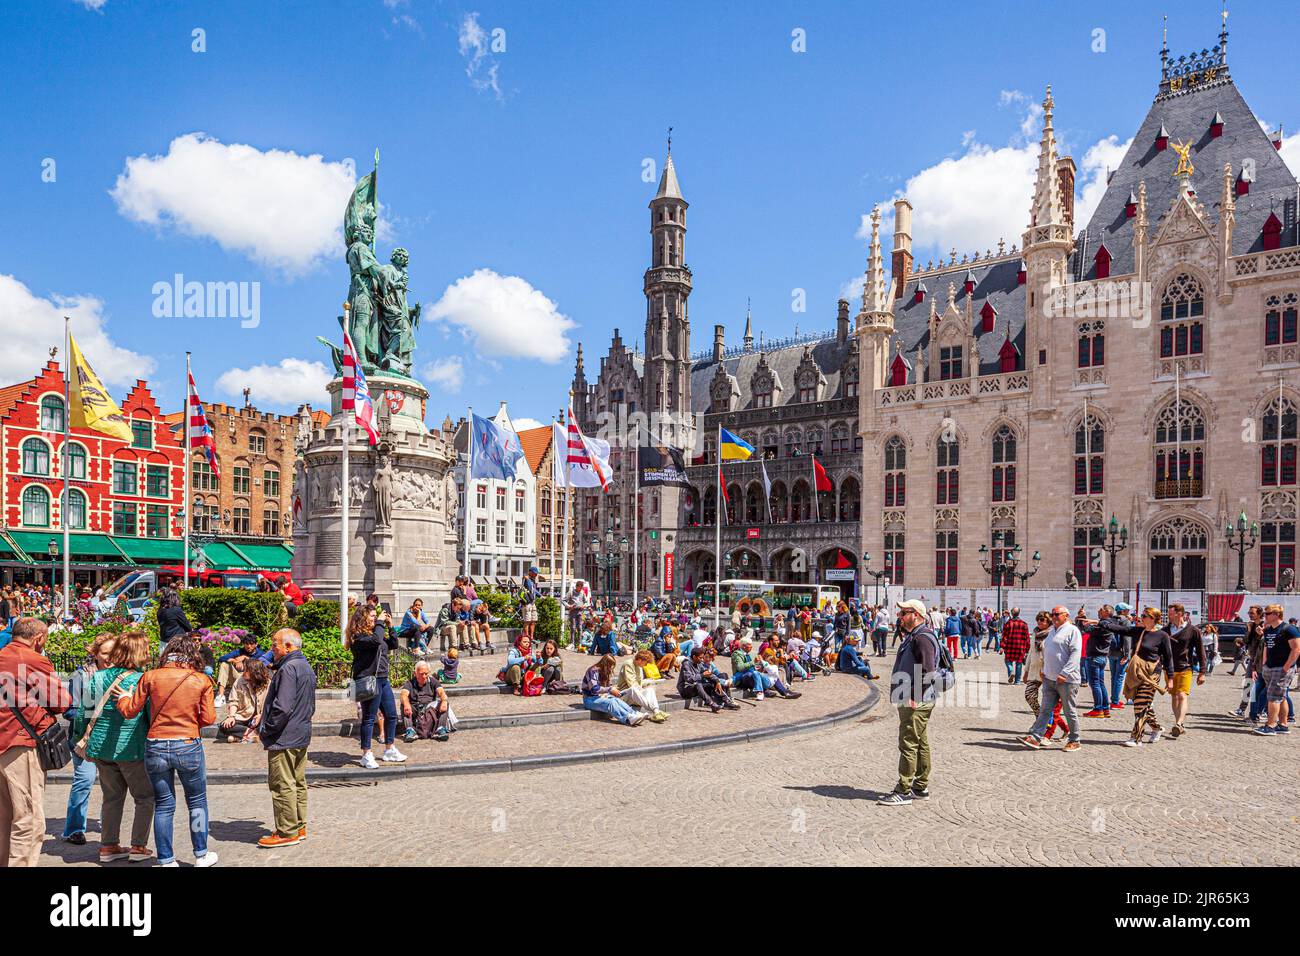 Las estatuas de Jan Breydel y Pieter de Coninck y el Provinciaal Hof (Tribunal Provincial) en la Plaza Markt en Brujas, Bélgica Foto de stock